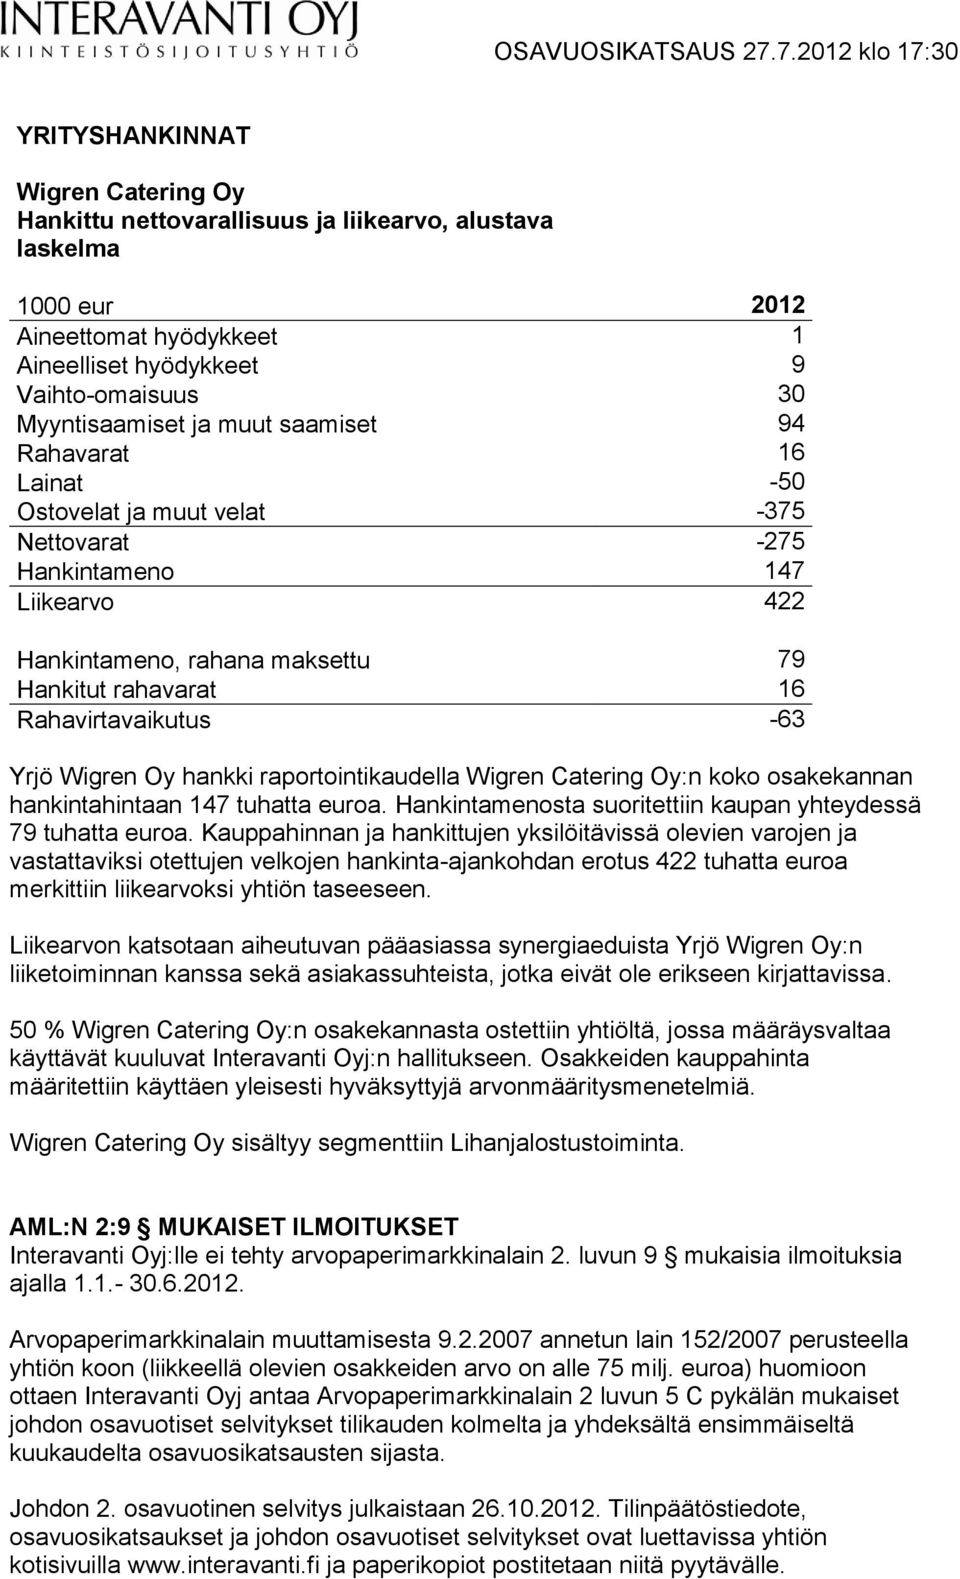 Wigren Oy hankki raportointikaudella Wigren Catering Oy:n koko osakekannan hankintahintaan 147 tuhatta euroa. Hankintamenosta suoritettiin kaupan yhteydessä 79 tuhatta euroa.